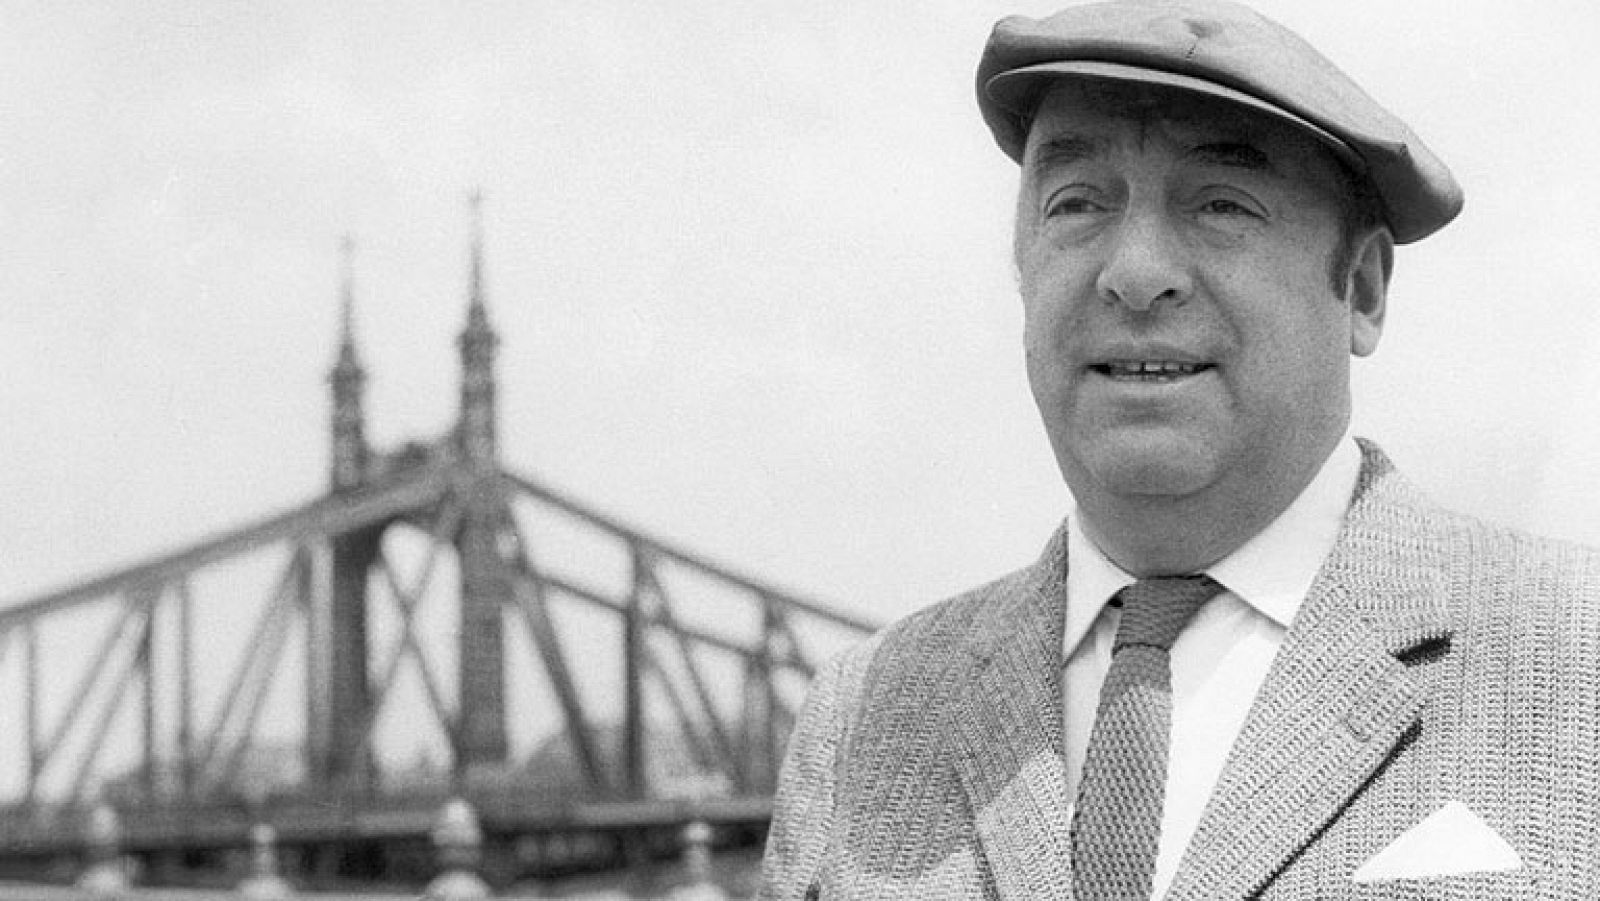  El poeta chileno Pablo Neruda no murió envenenado. Lo ha certificado el equipo forense que ha examinado sus restos, exhumados el pasado mes de abril. Neruda murió de cáncer, pero en los últimos años había cobrado importancia la teoría del asesinato político.
